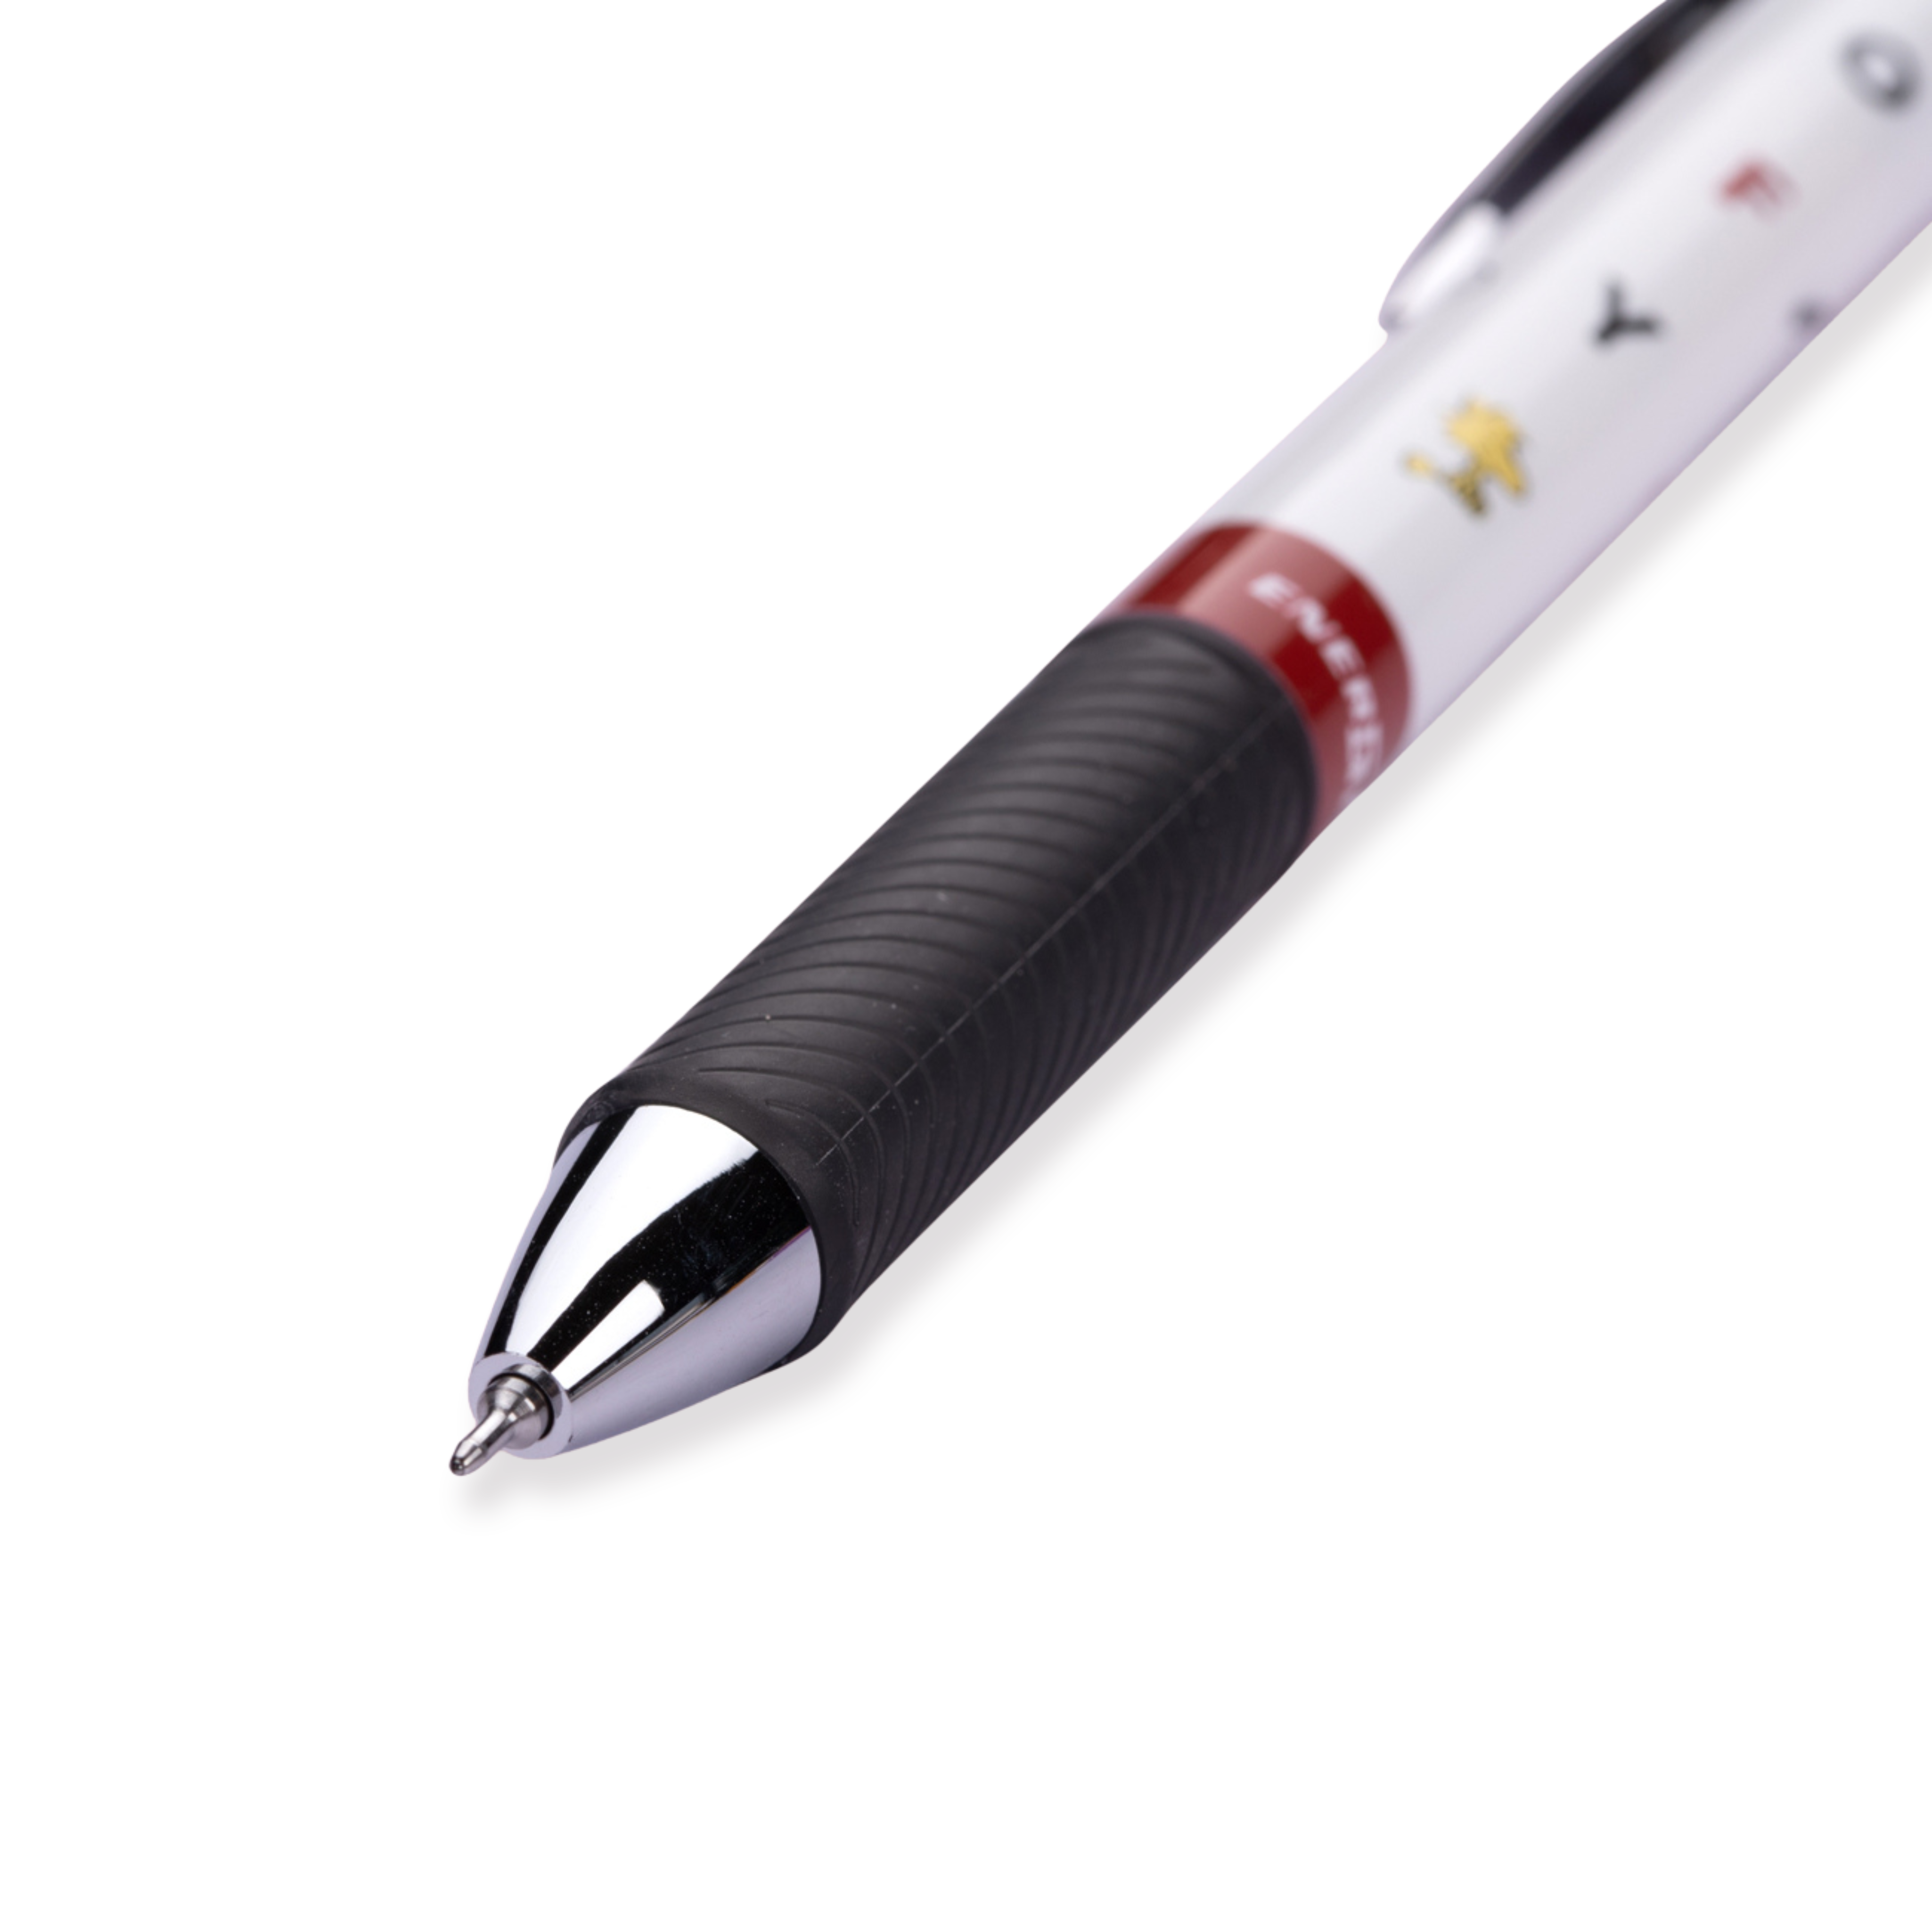 Bolígrafo de gel Pentel EnerGel Snoopy de edición limitada - 0,5 mm - Tinta negra - Agarre negro